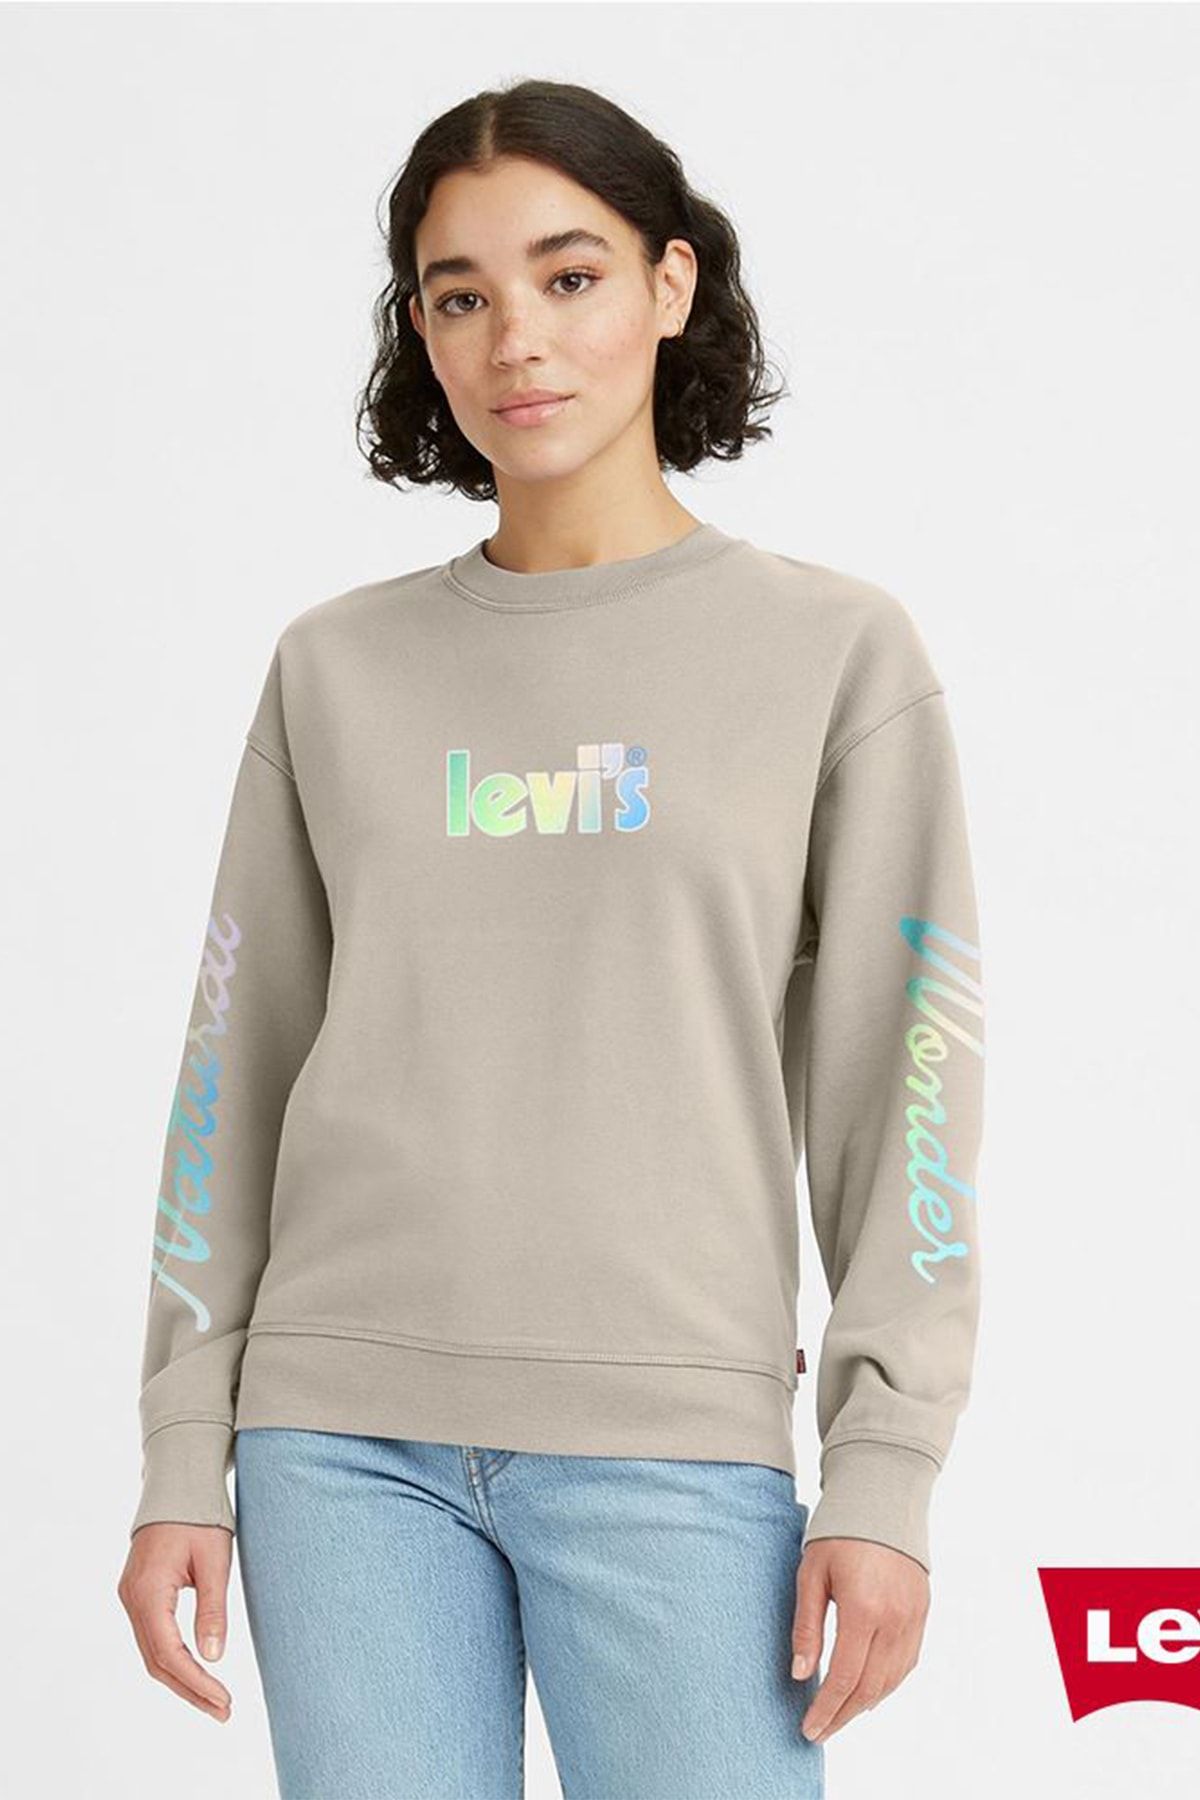 Levi's Kadın Relax Fit Renkli Sweatshirt - 18686-0102